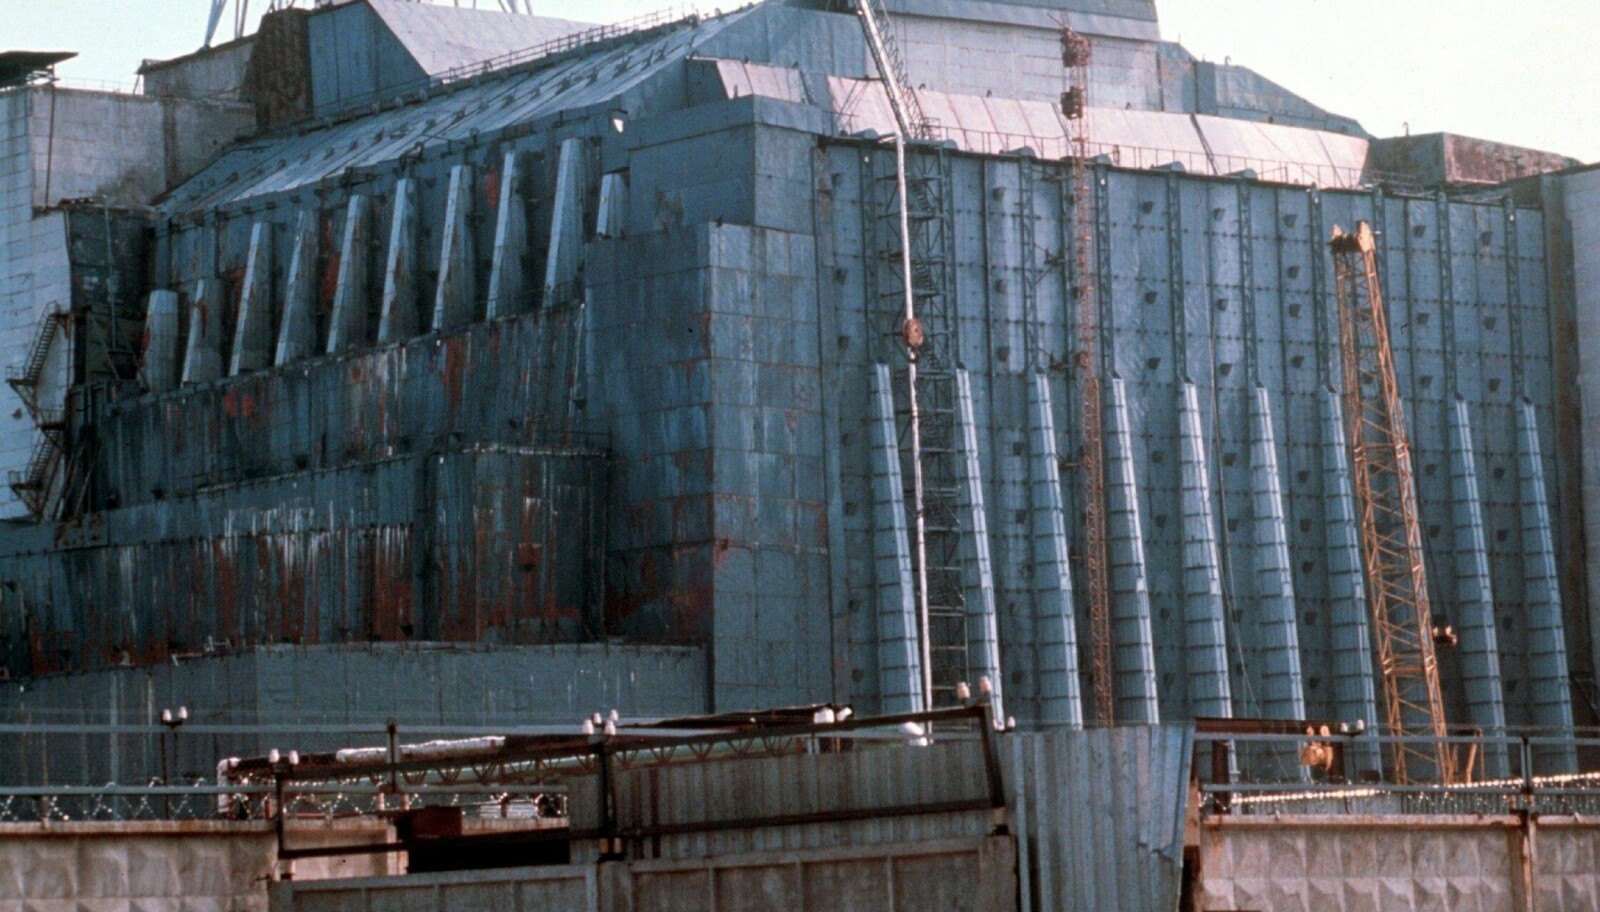 <b>BESKYTTELSE:</b> "Sarkofagen i Tsjernobyl". Den fjerde reaktoren i Tsjernobyl er her "pakket" inn og ser ut som en "sarkofag" - med håp om at ikke mere radioaktivitet skal slippe ut fra denne. Tsjernobyl-ulykken er historiens største sivile kjernekraftulykke som skjedde 26.april 1986. Det ble målt radioaktivitet i mange land, ikke minst i Norge.